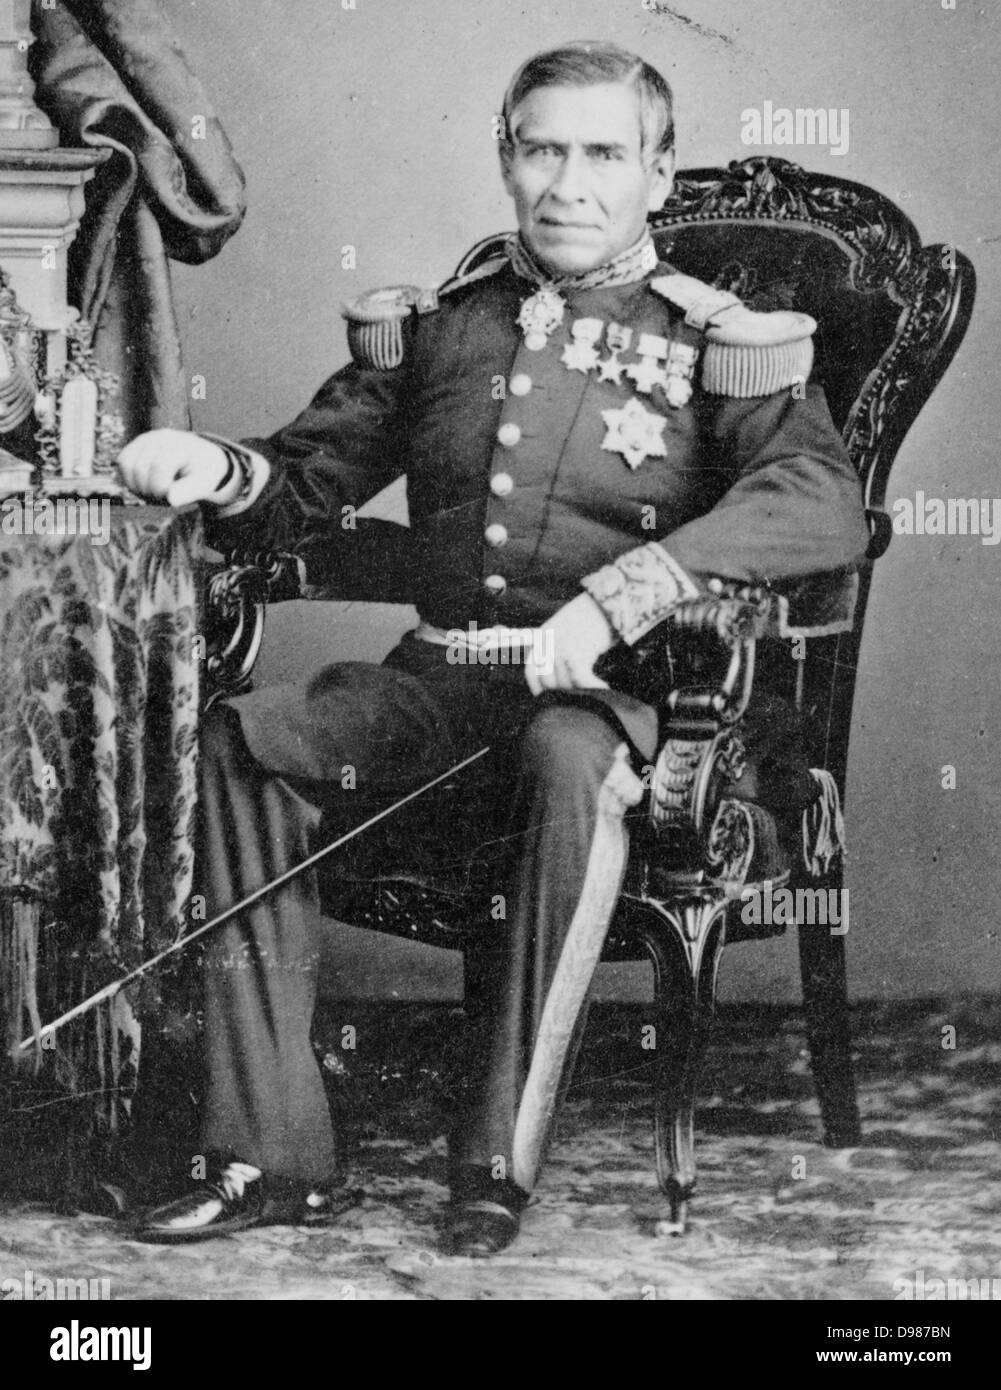 Juan Nepomuceno Almonte (Mai 15, 1803 - Mars 21, 1869) était un représentant mexicain, militaire et diplomate. Il était un vétéran de la bataille de l'Alamo pendant la révolution du Texas. Almonte est également un chef de cabinet du ministre des conservateurs dans les années 1860 et a servi comme regent Banque D'Images